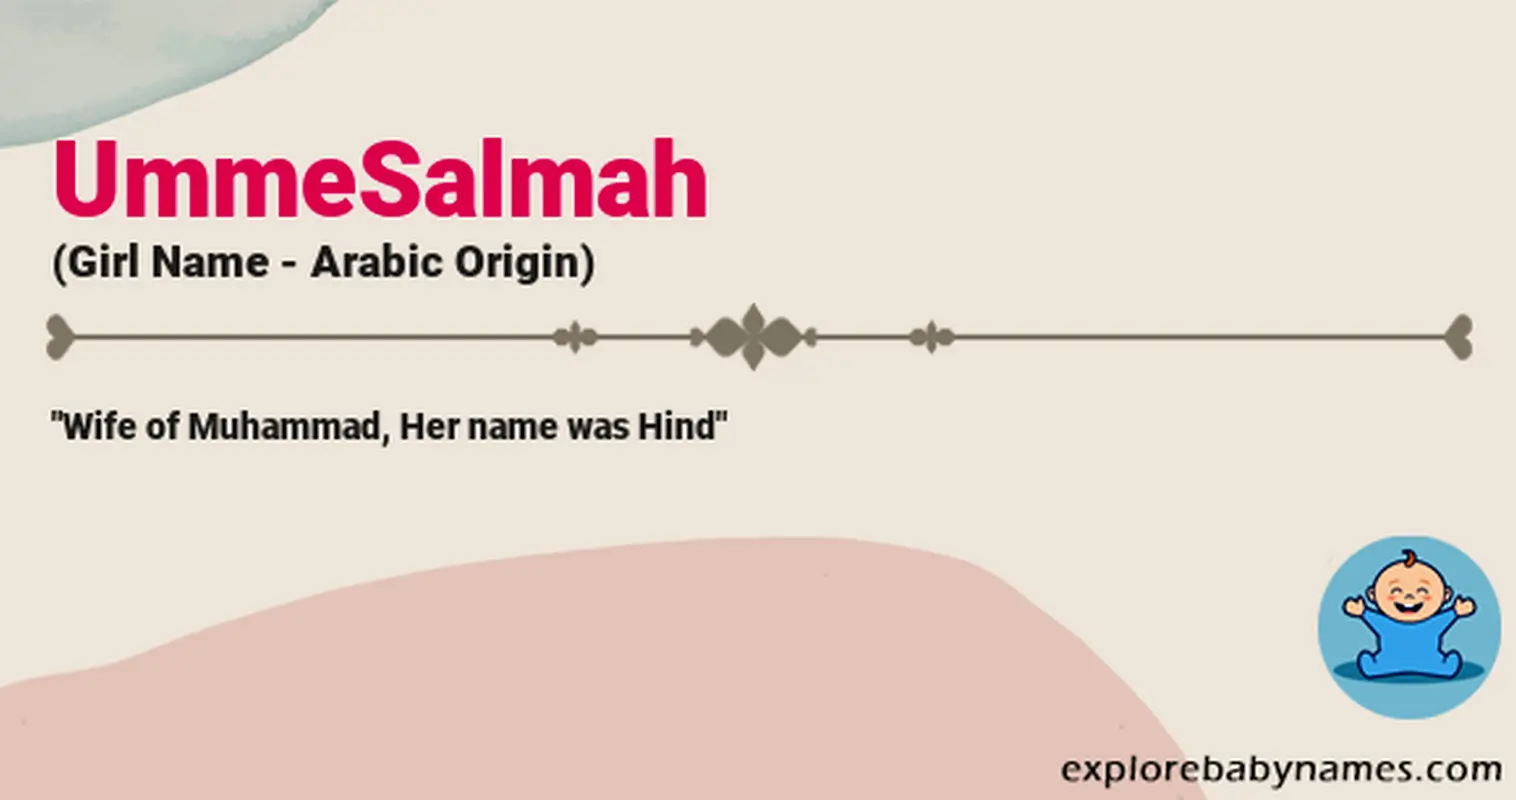 Meaning of UmmeSalmah